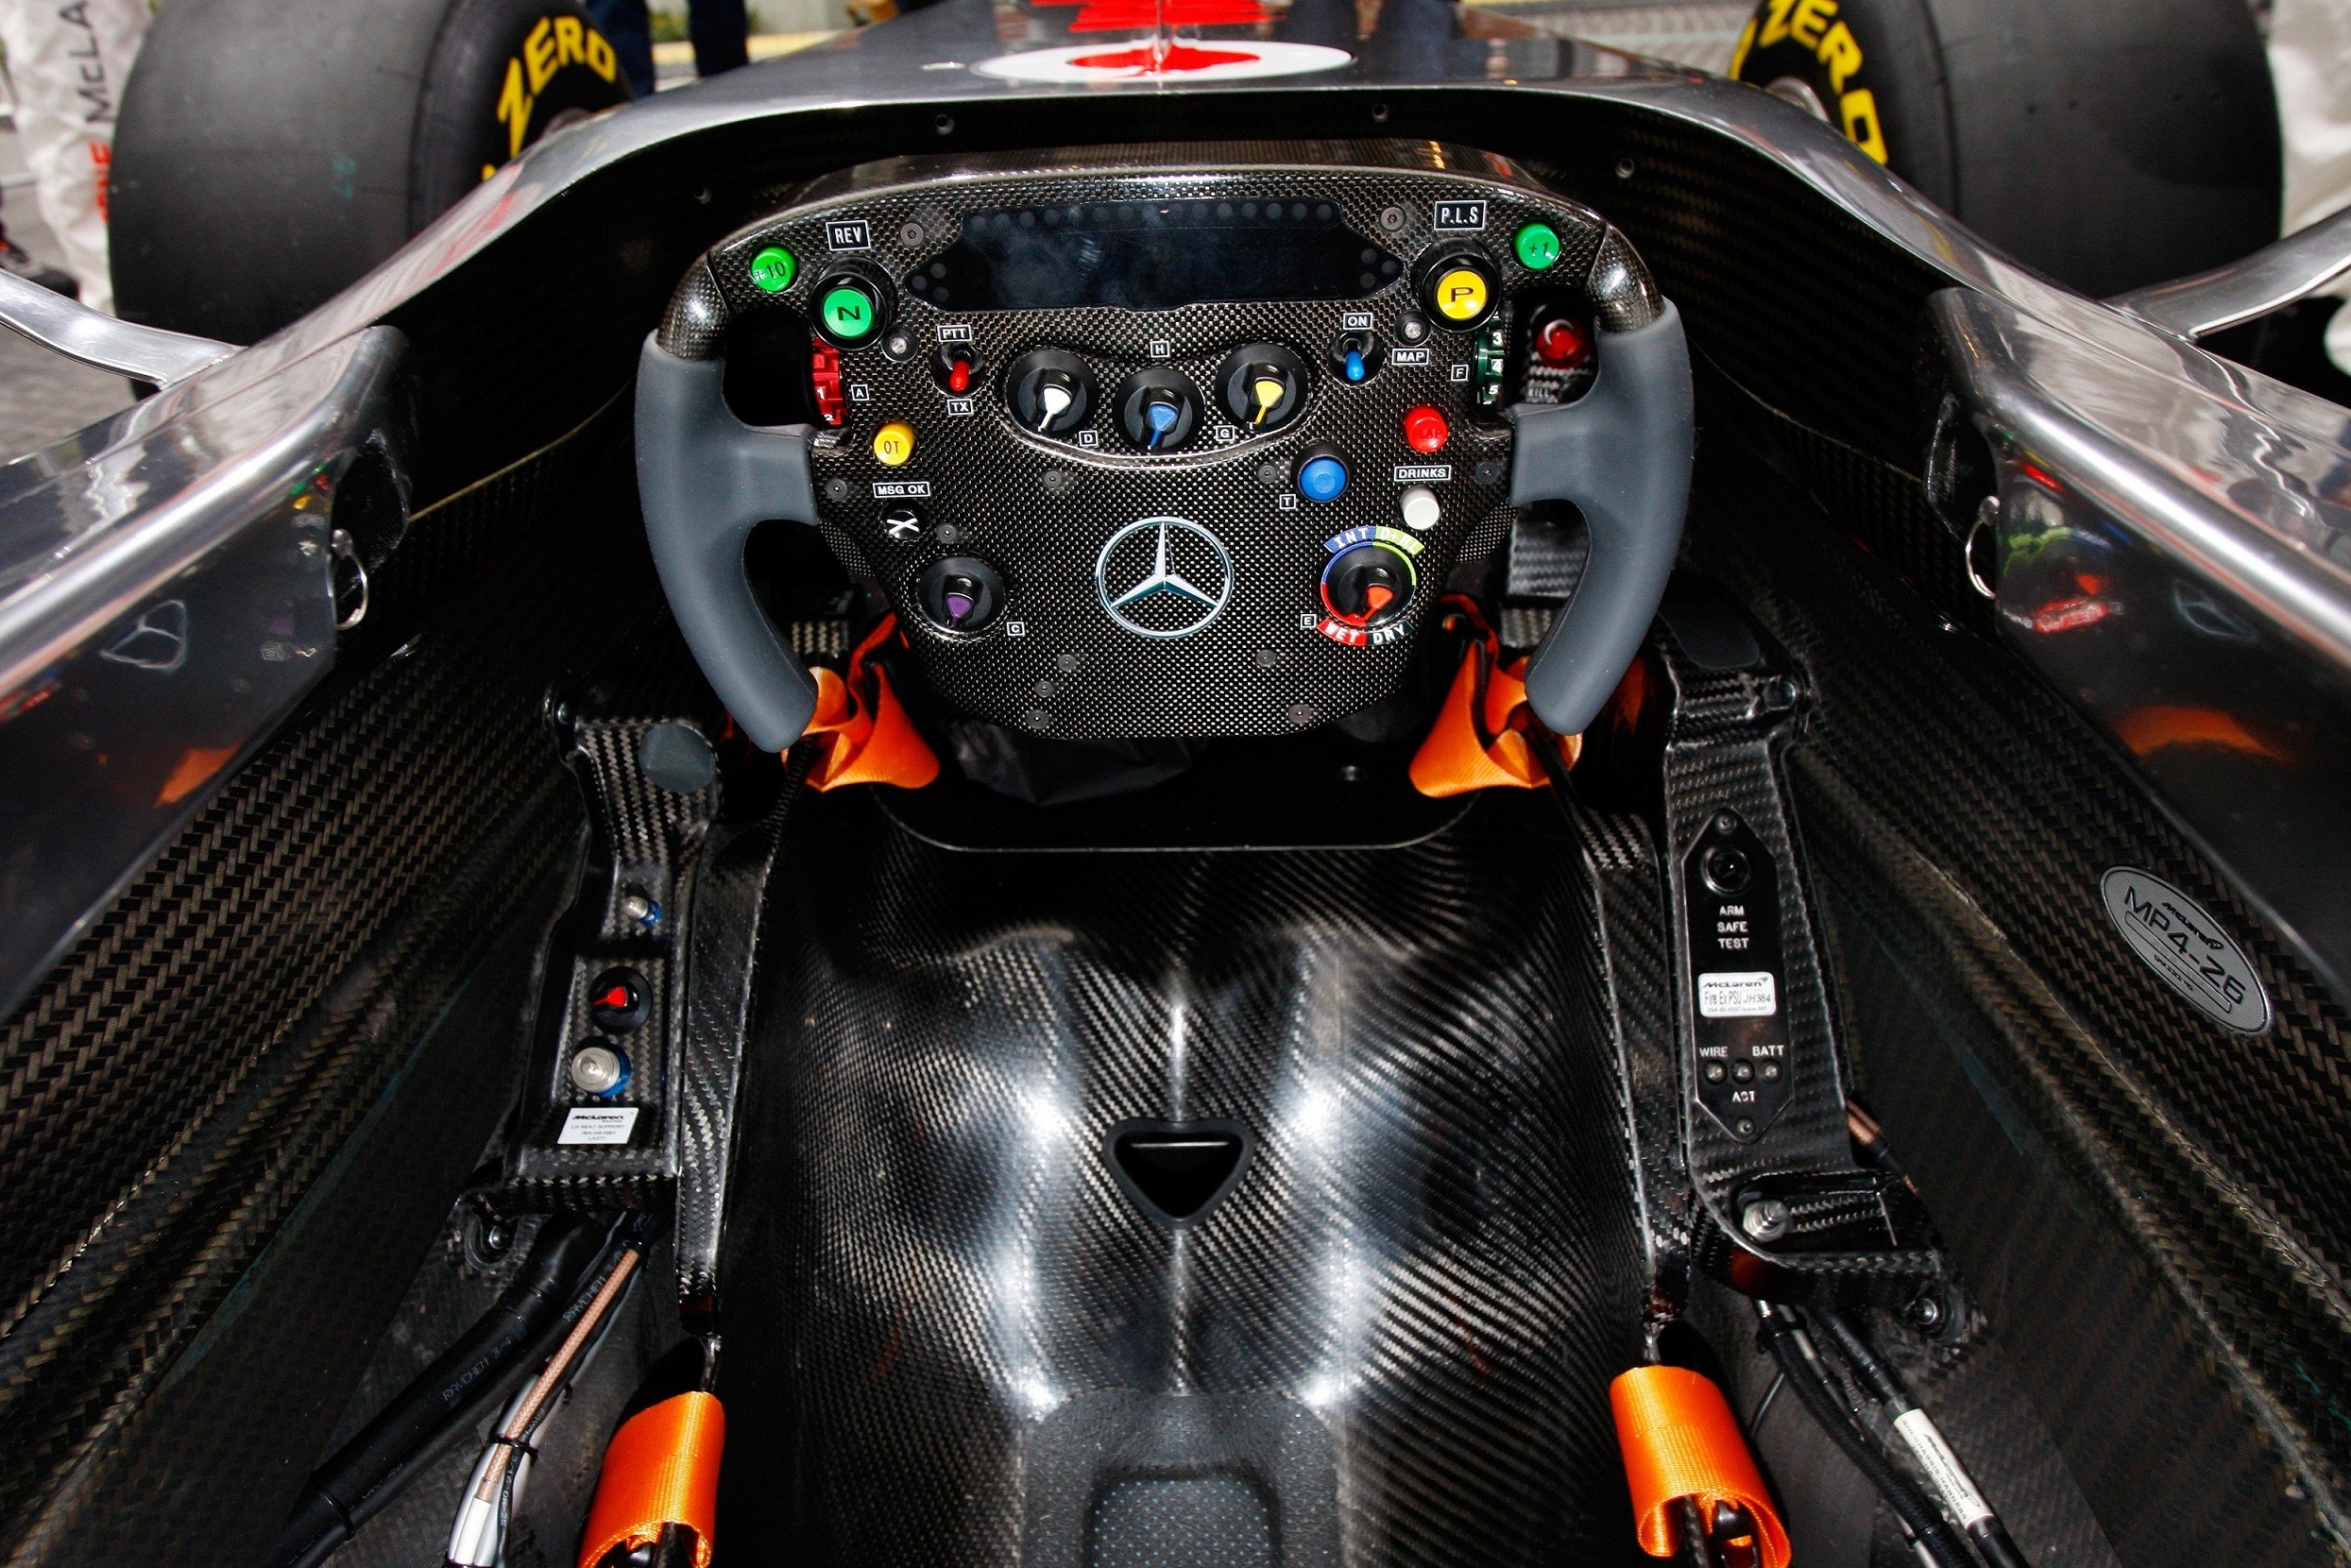 Formula 1 Car Cockpit - 2489x1660 Wallpaper 